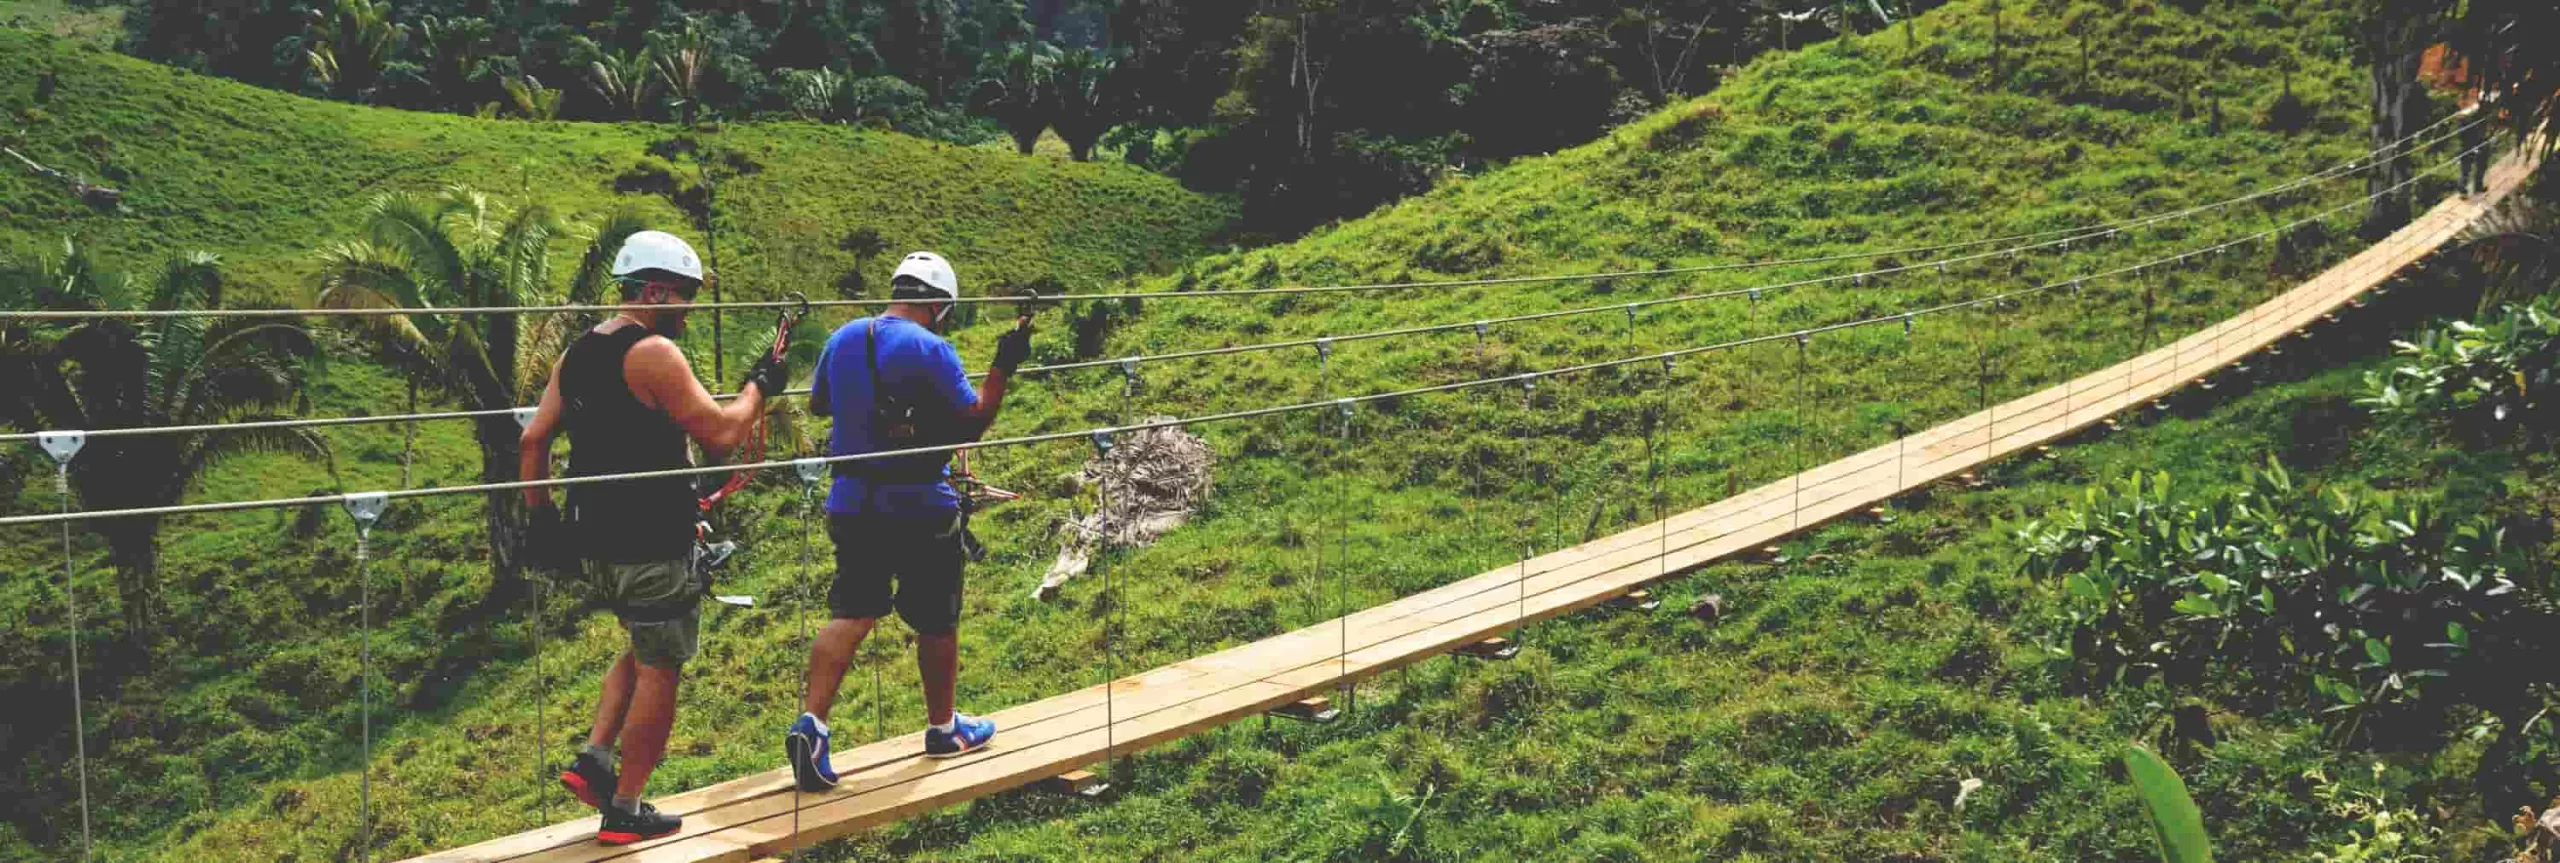 Ecoproparks. Dos personas equipadas con protección caminando de manera segura sobre un puente de madera, disfrutando de una aventura en medio de una montaña verde y exuberante con Ecoproparks.